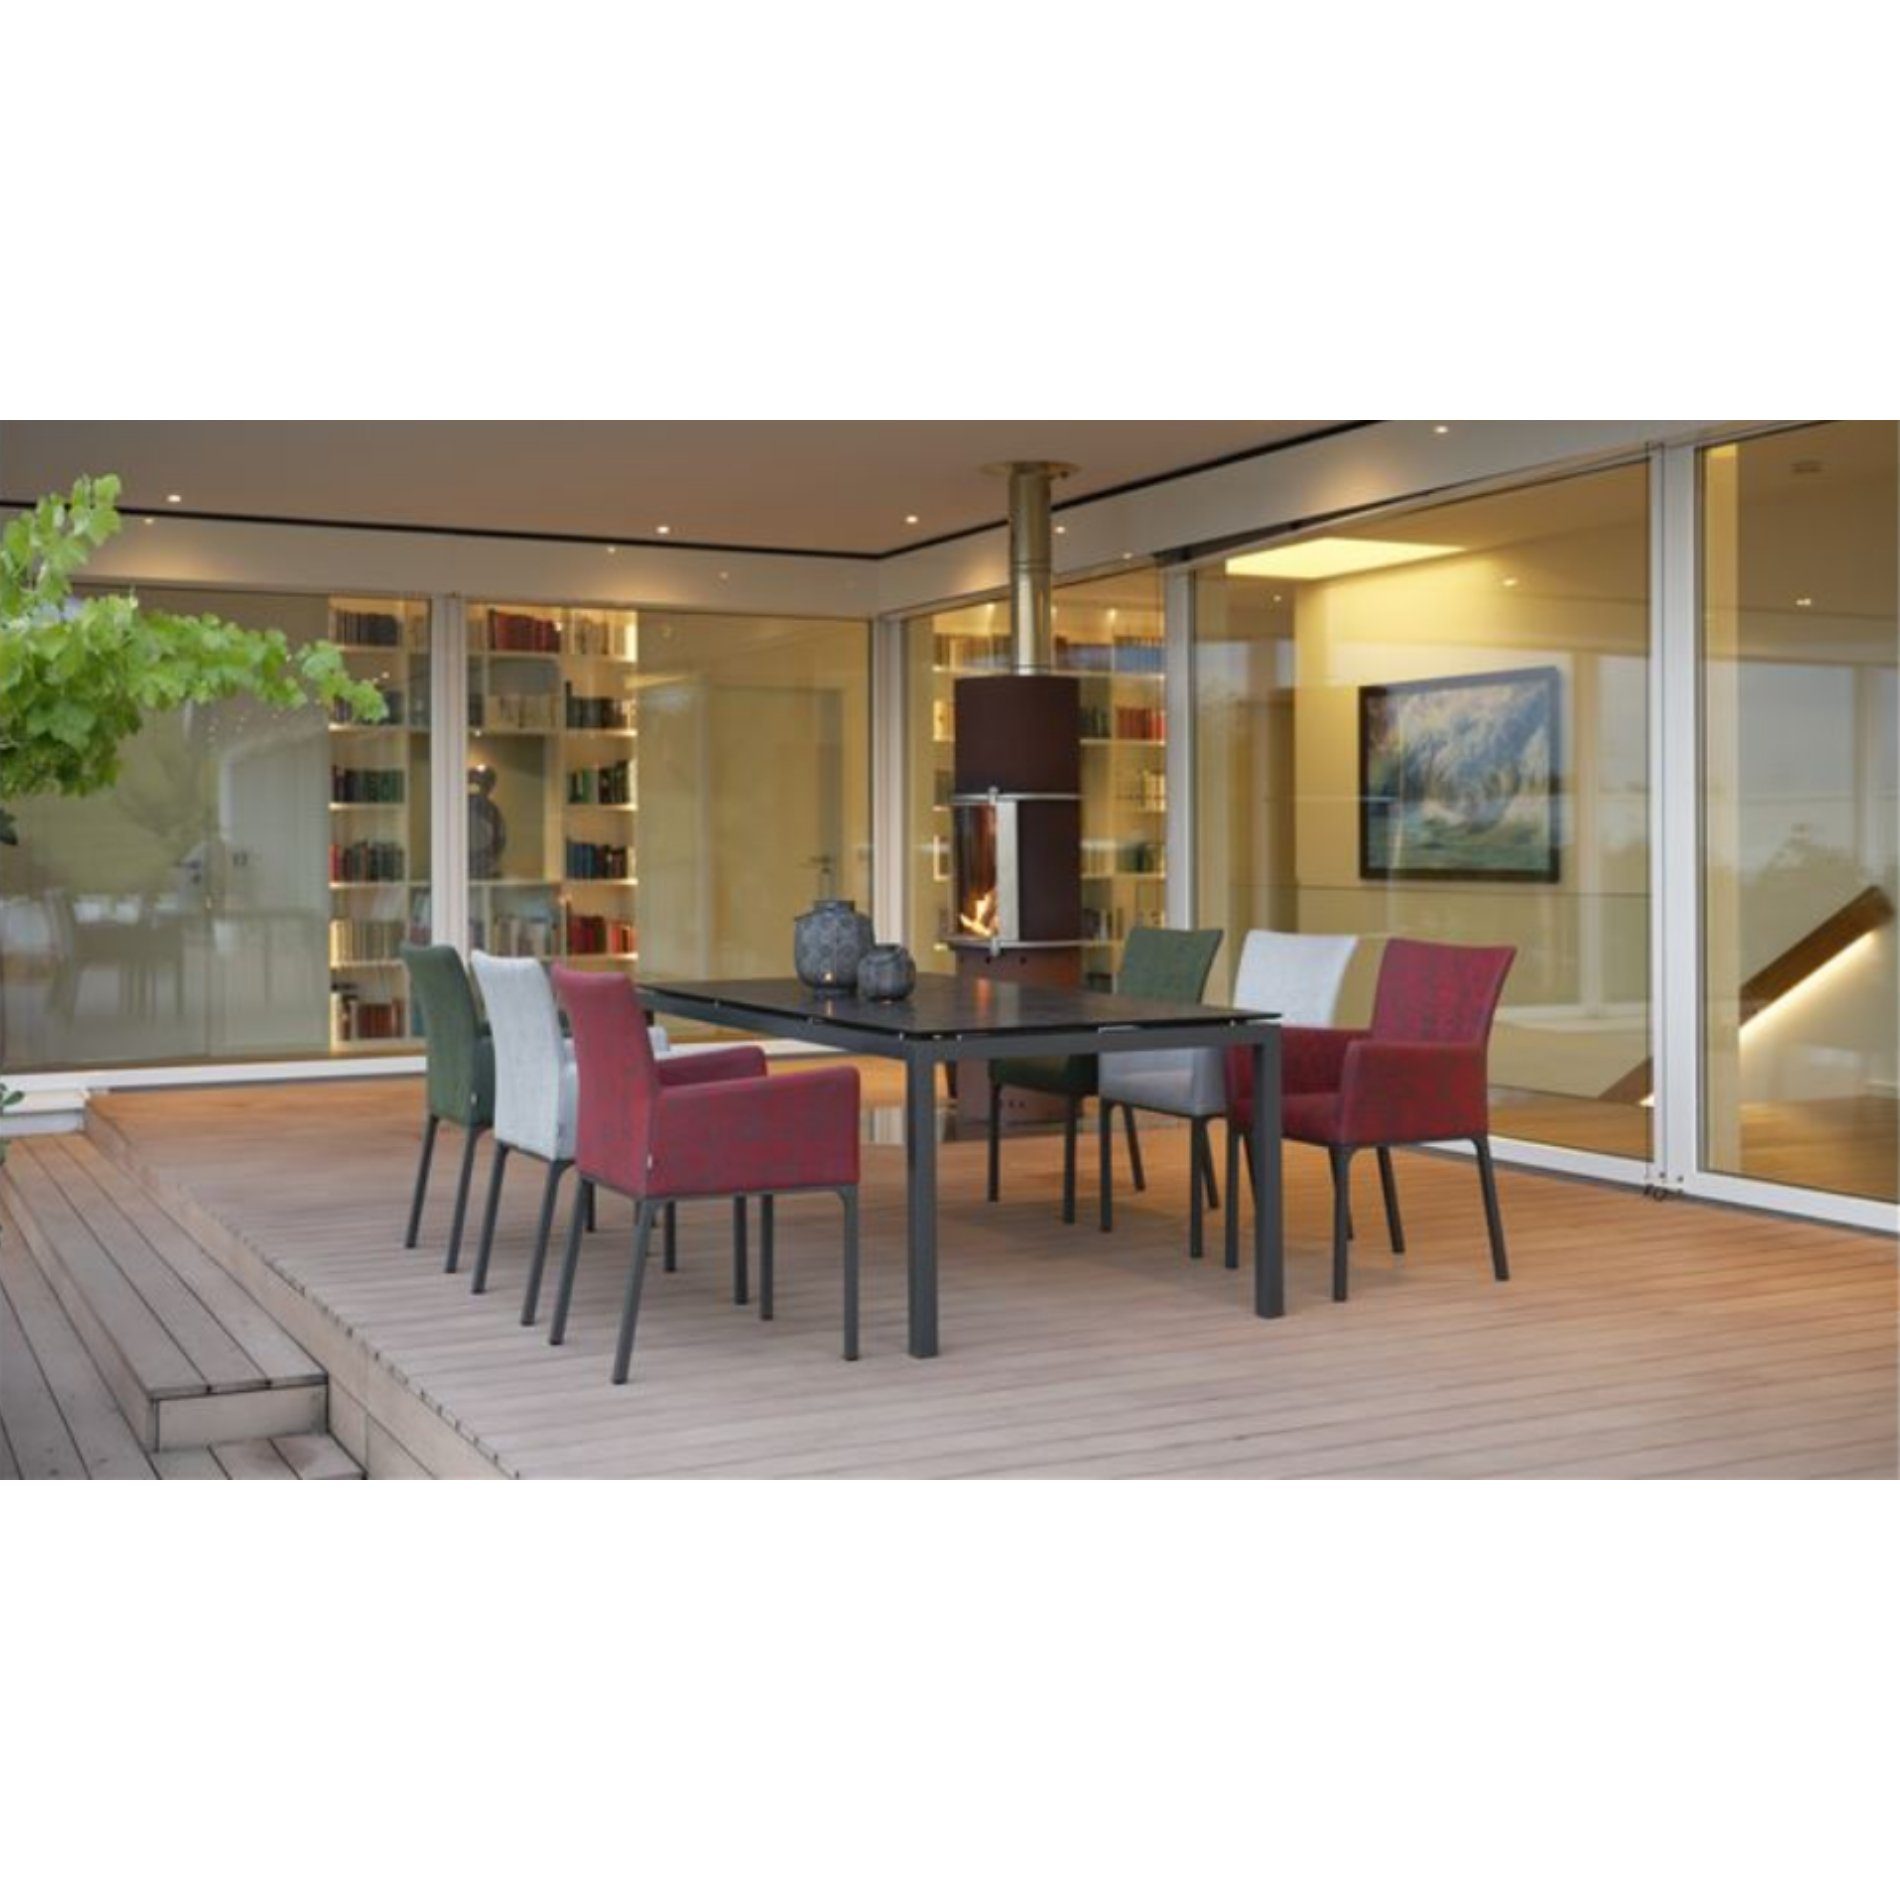 Stern Gartenmöbel-Set mit Diningsessel "Artus" und Gartentisch 180x100cm, Alu anthrazit, Tischplatte HPL Dark Marble